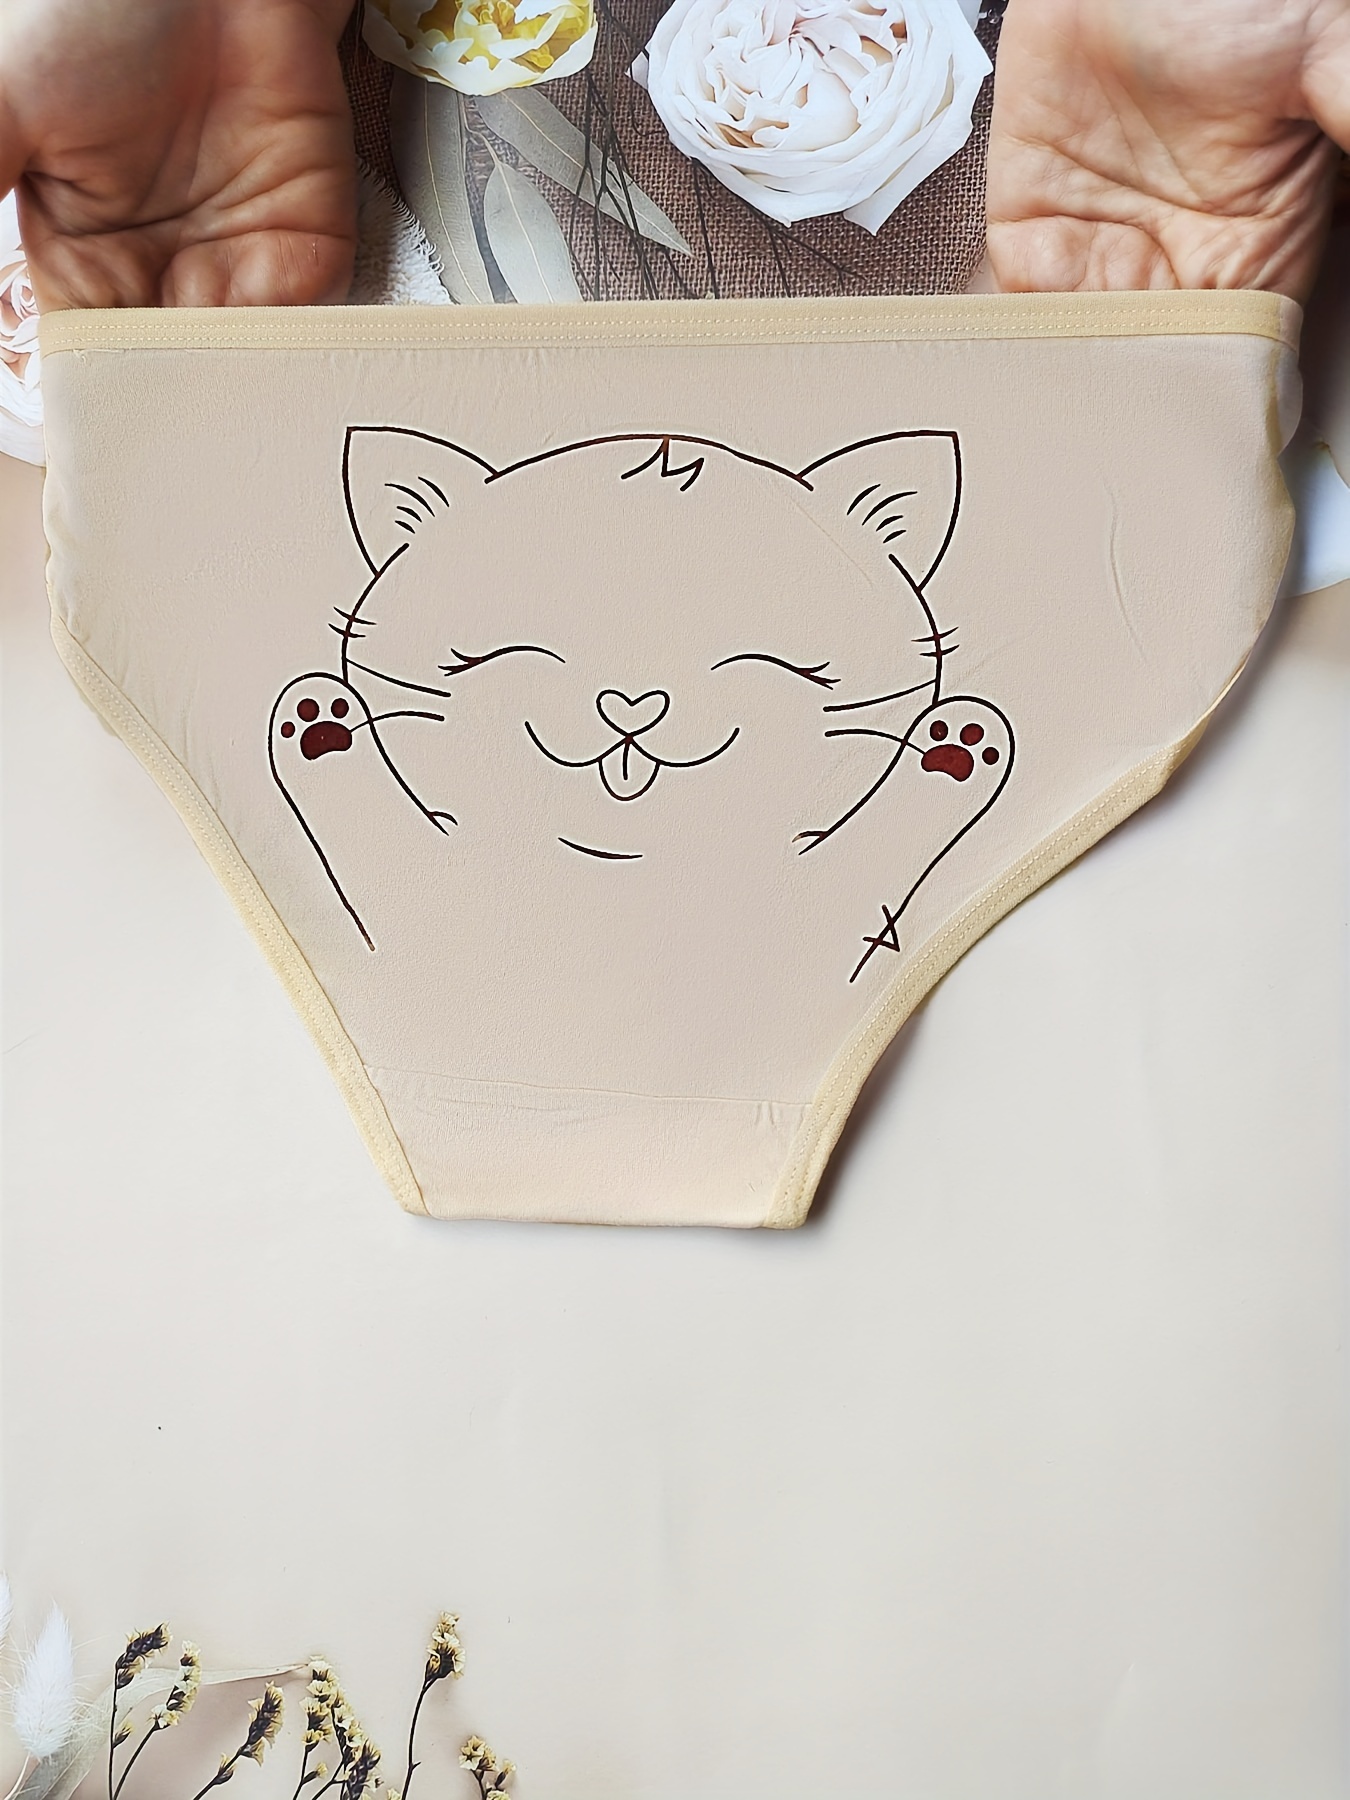 Women Cat Intimates Underwear, Panties Women Cat